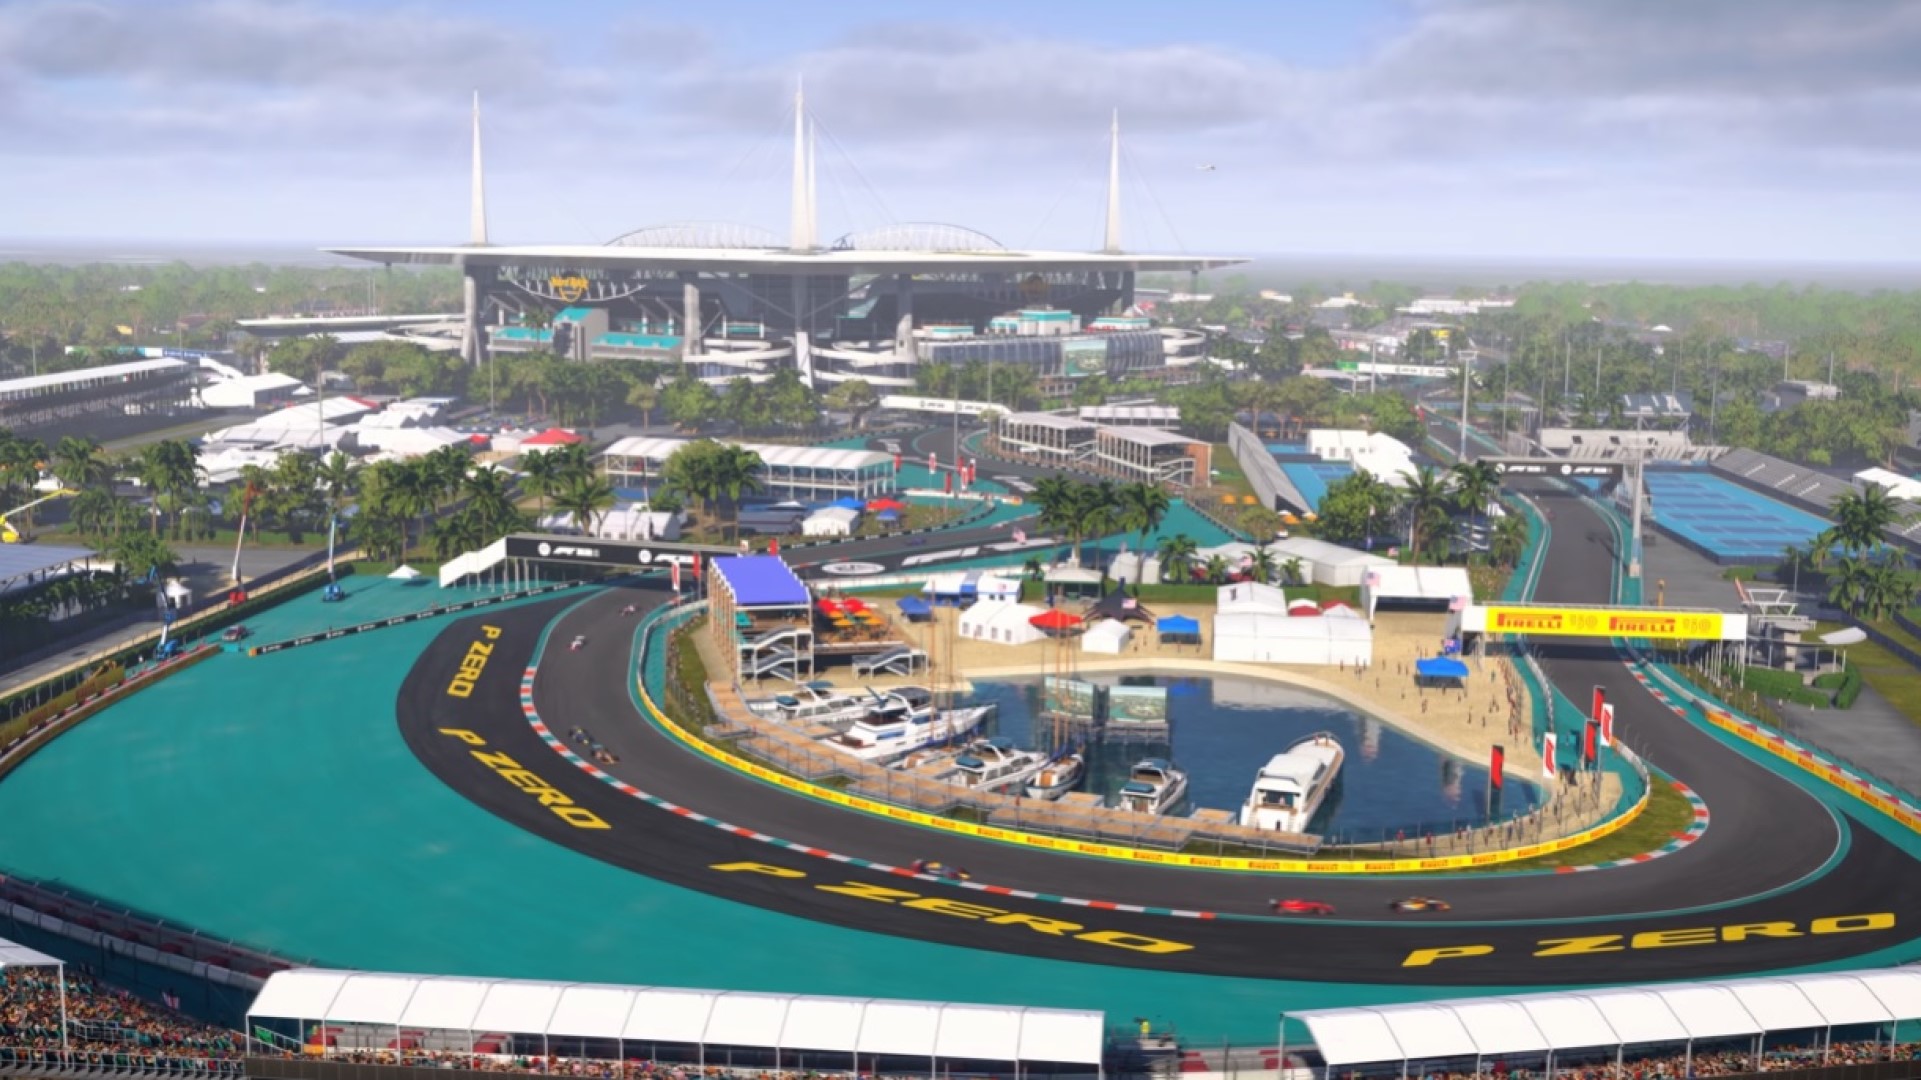 《F1 22》新預告展示邁阿密國際賽道預熱場景